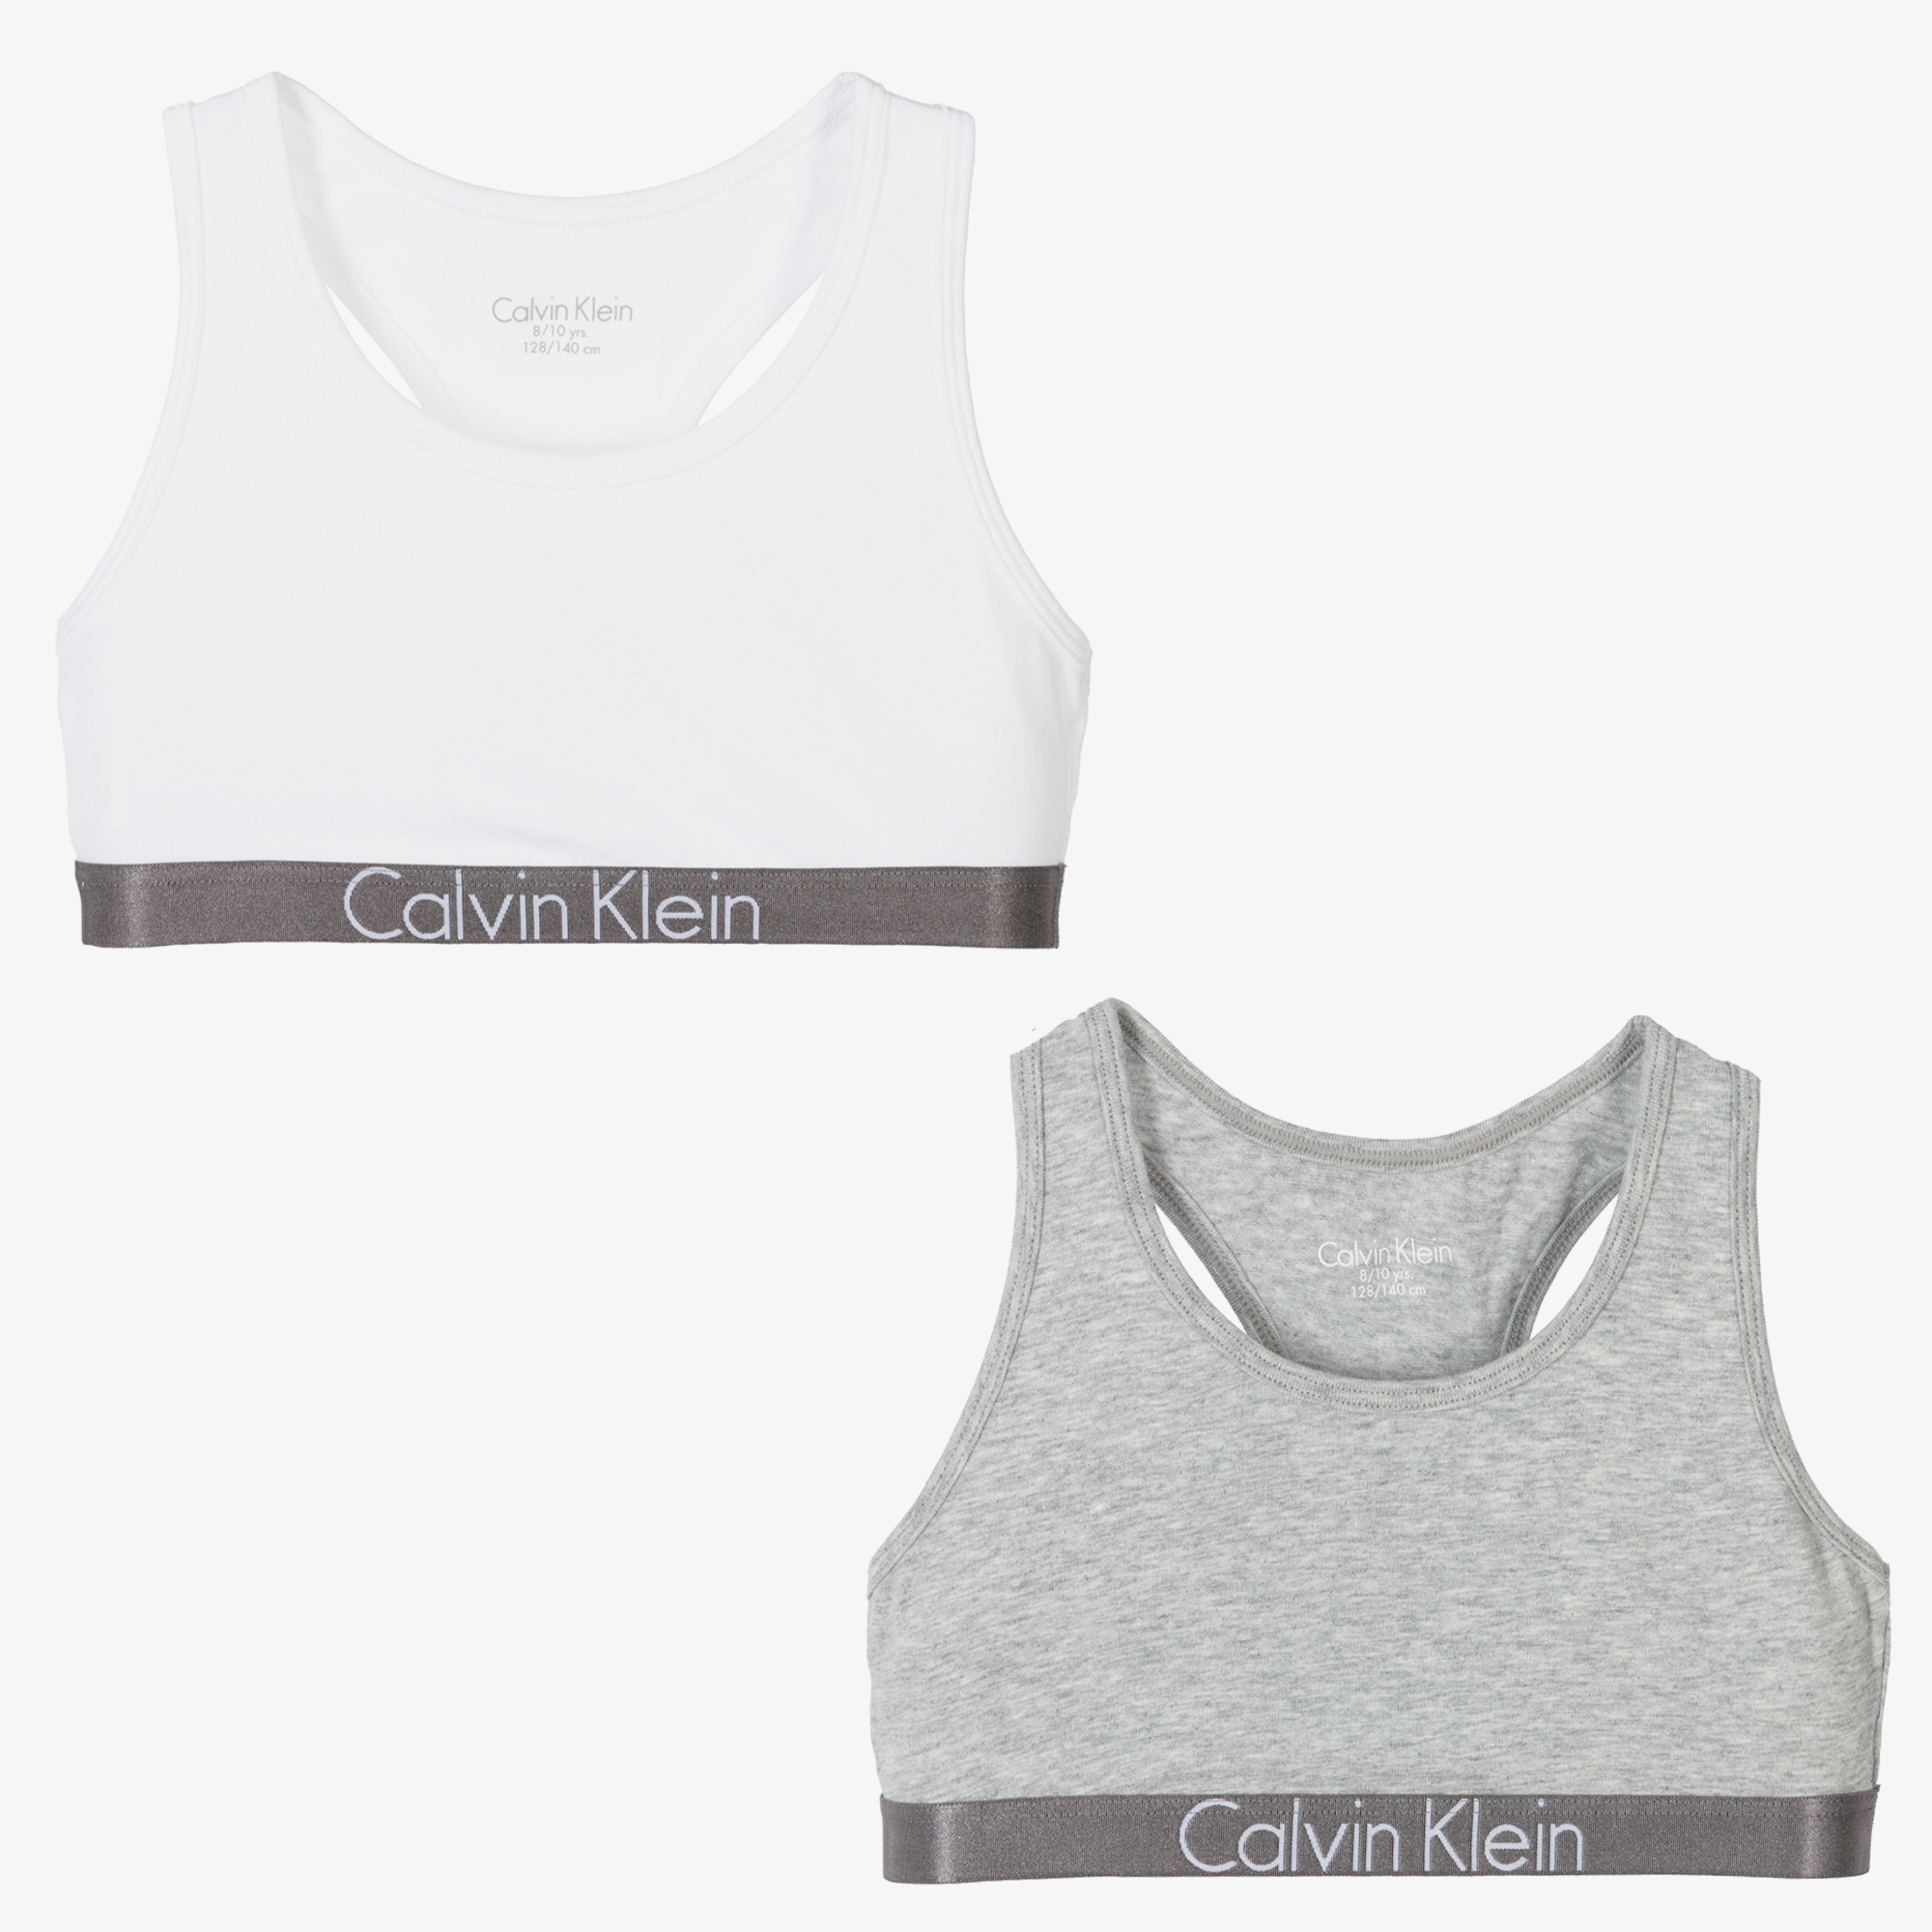 Calvin Klein Grey & White Cotton Bra Tops (2 Pack)